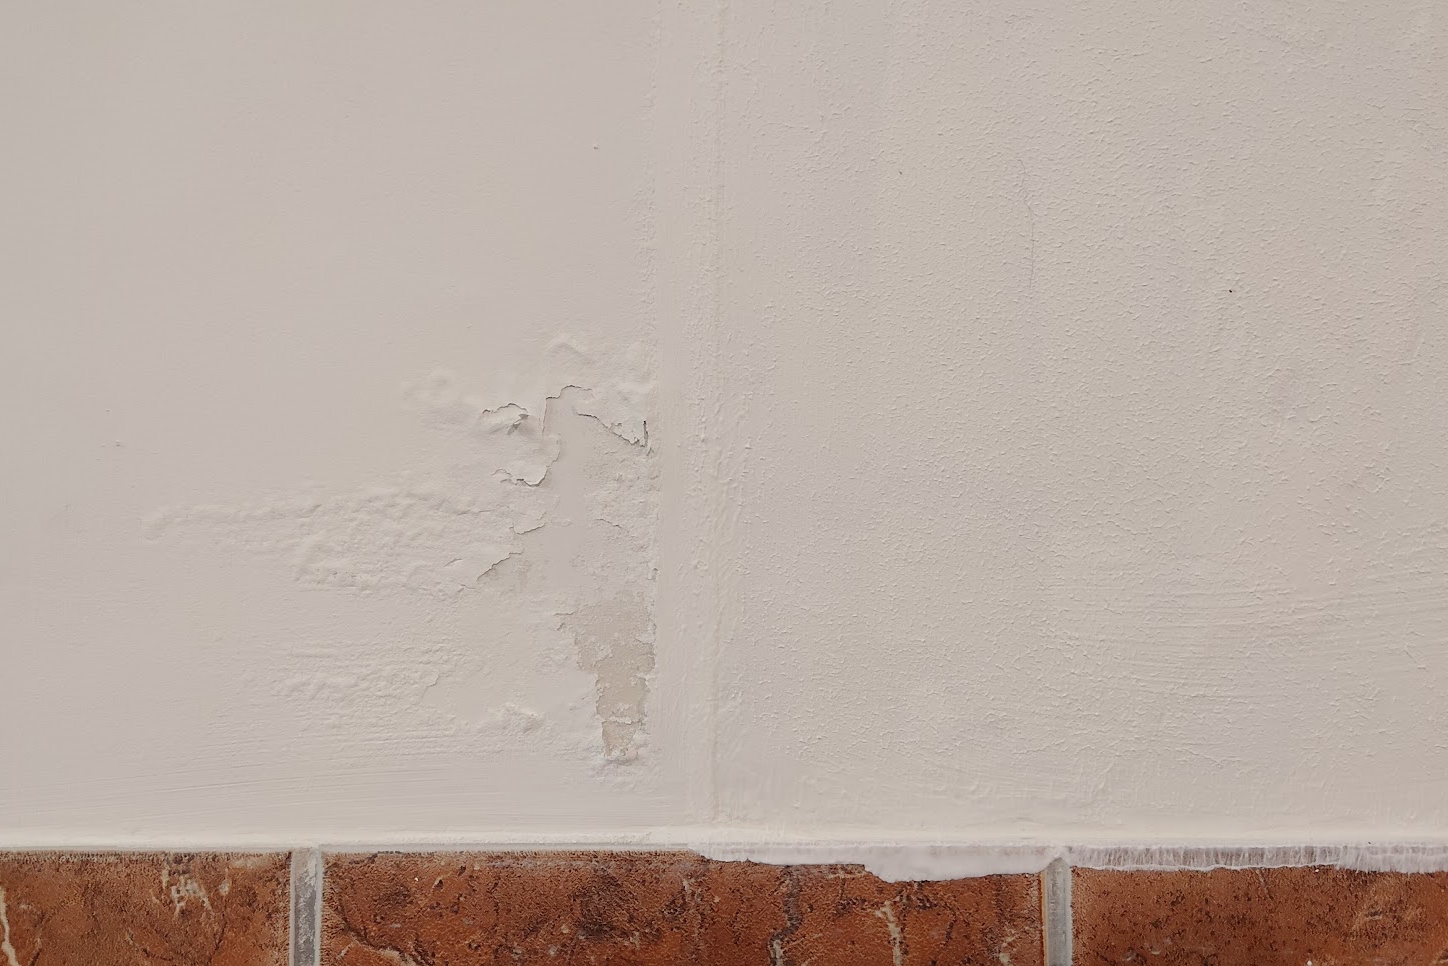 Izolacja ścian przed wilgocią w przejściu - ALPHA CZECH, Revolutionary reflective insulating coatings